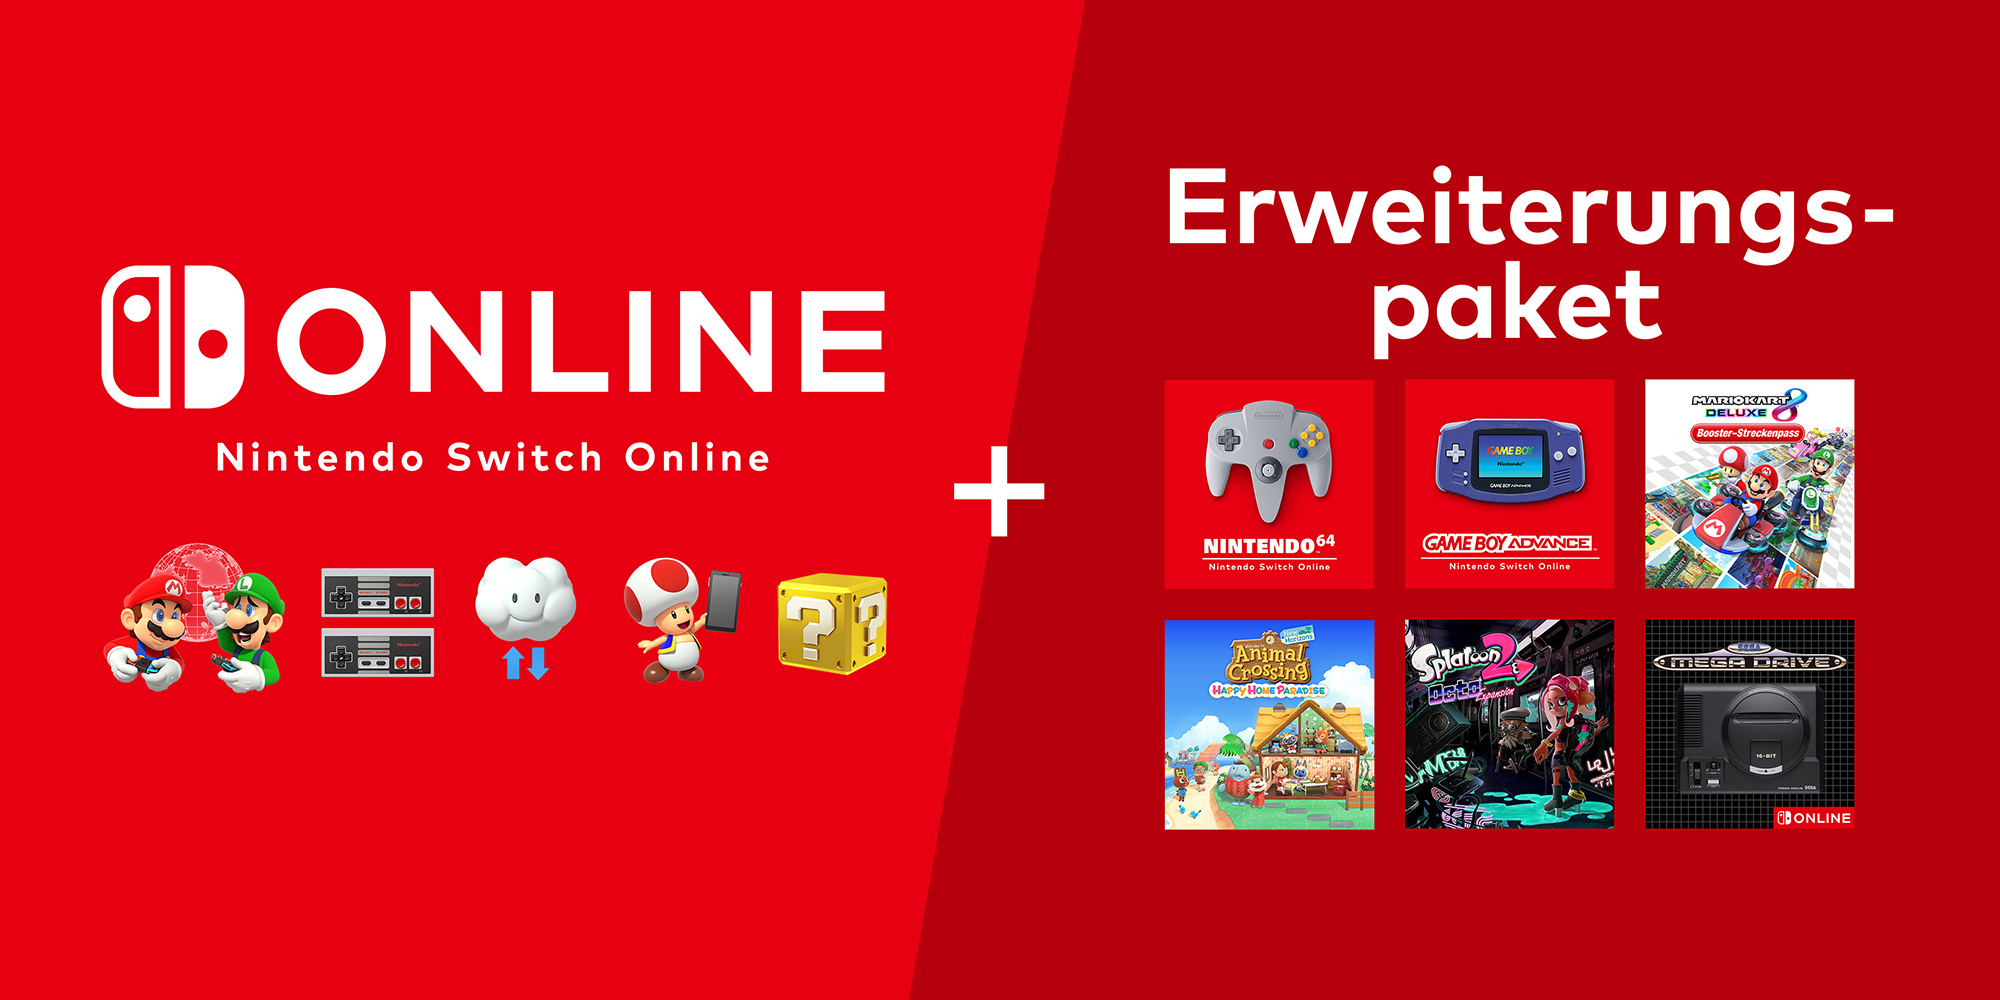 Nintendo Switch Online + | | Nintendo Switch Erweiterungspaket Nintendo Online